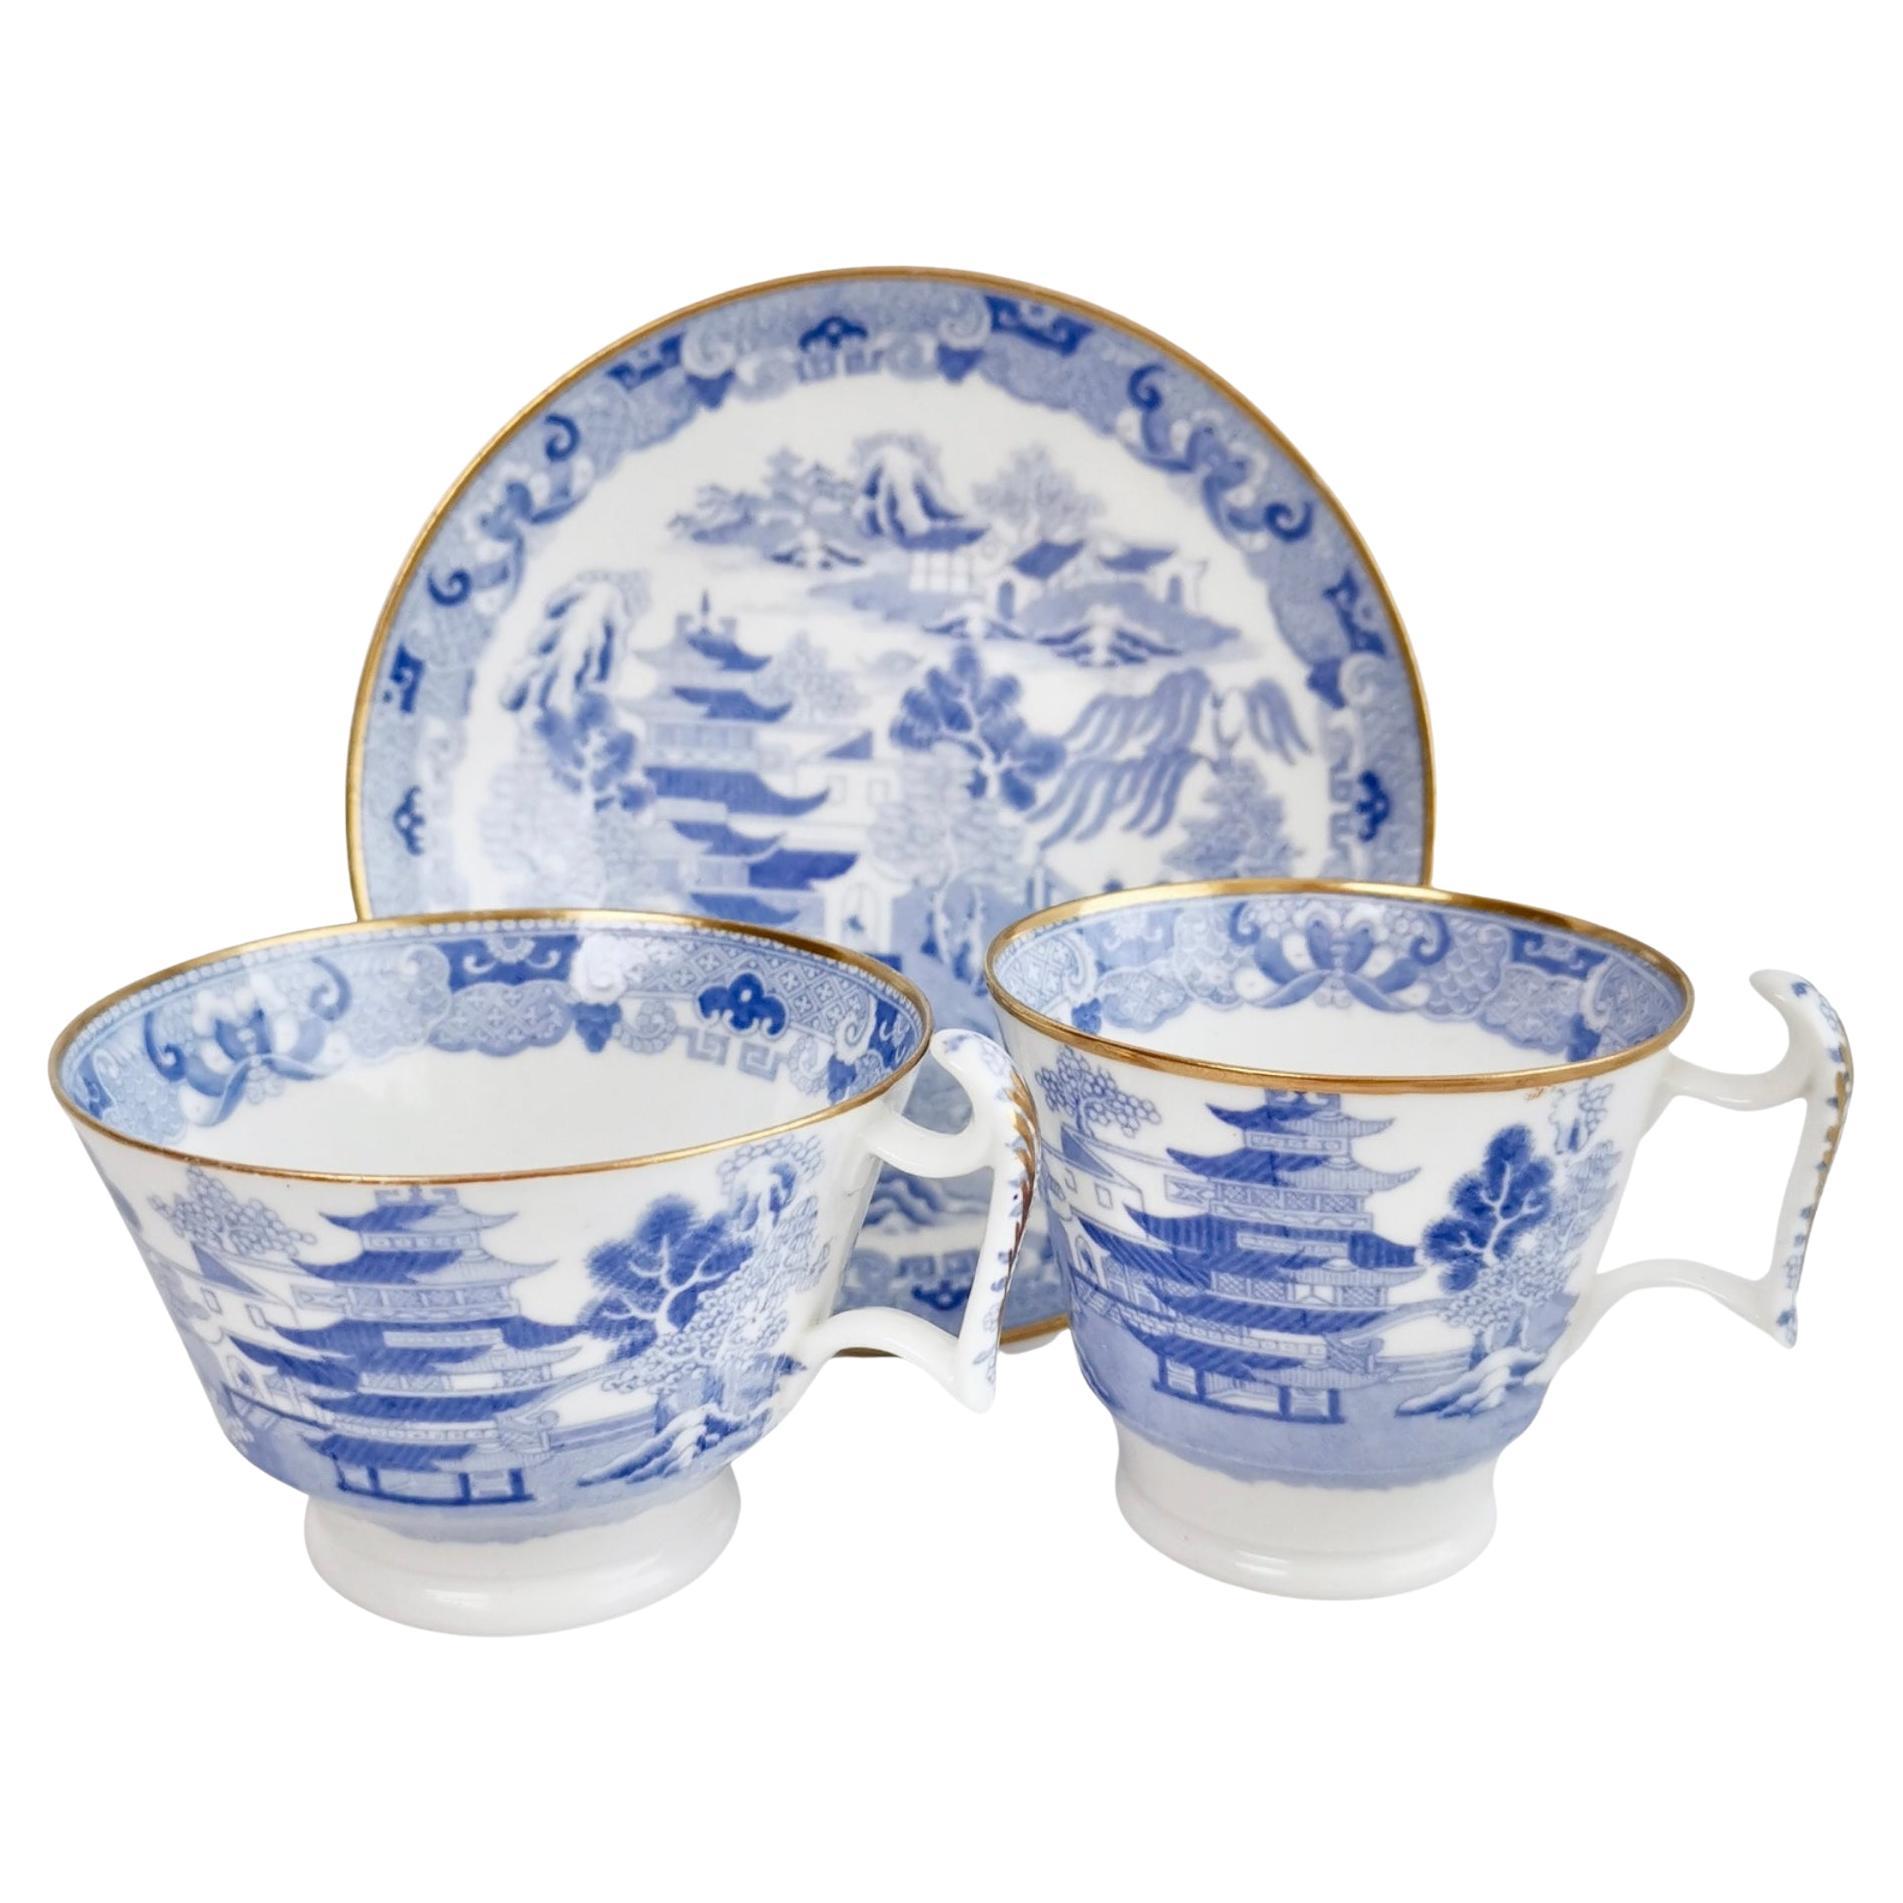 Spode Porcelain Teacup Trio, Brosely Pagoda Blue and White Transfer, ca 1815